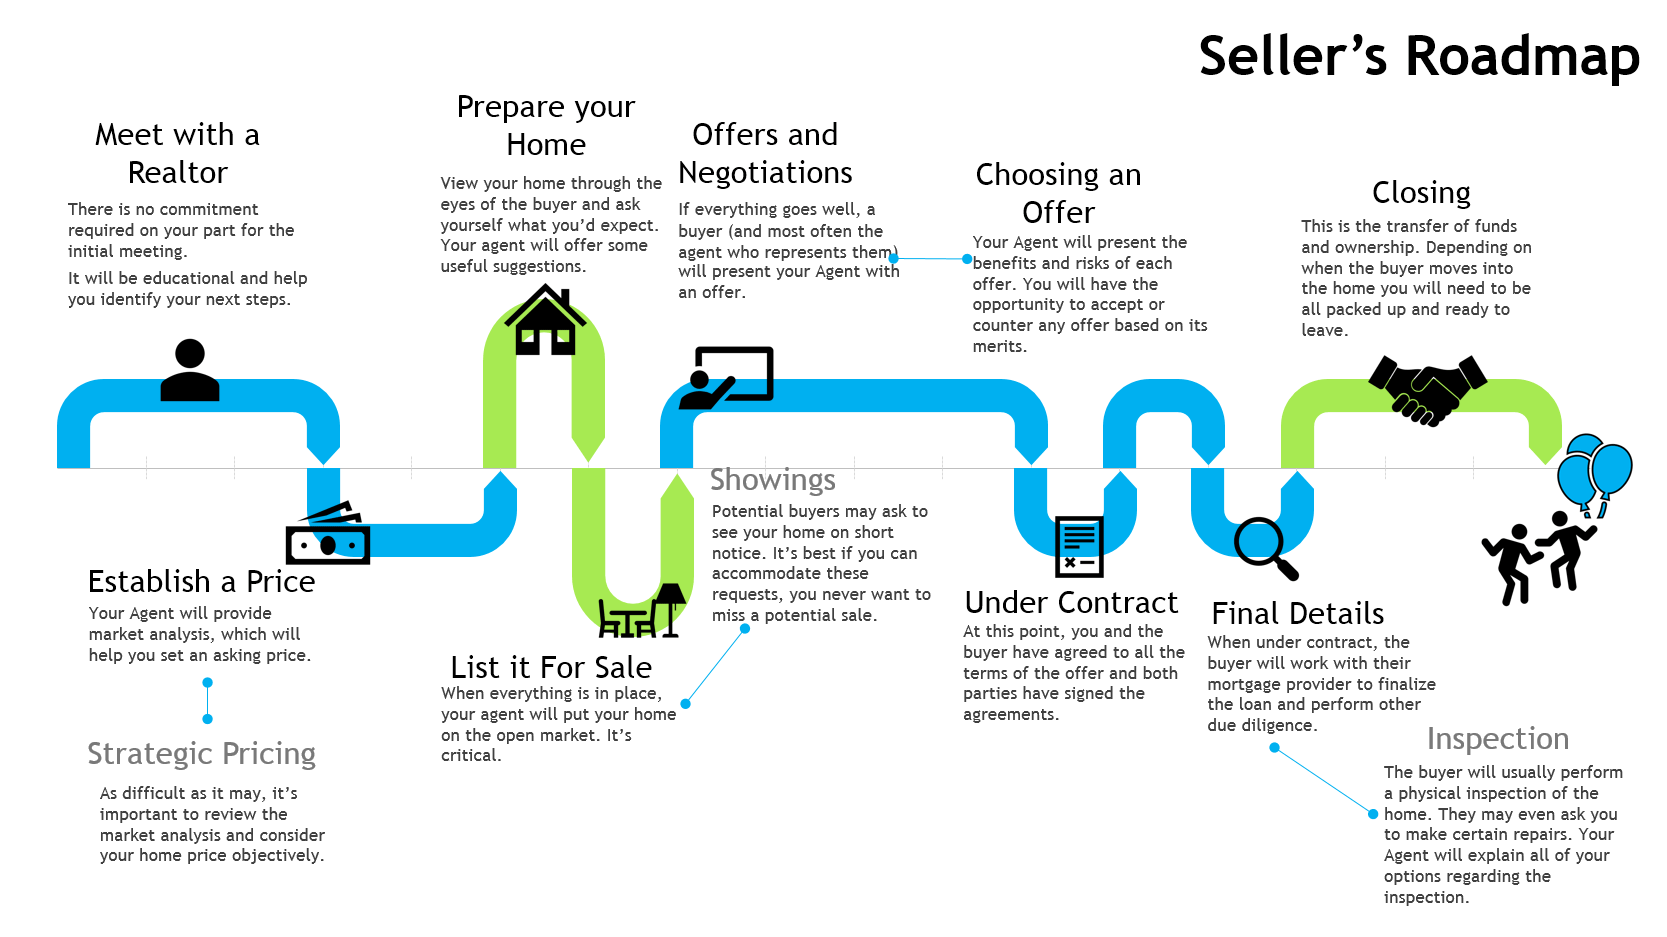 Seller's roadmap